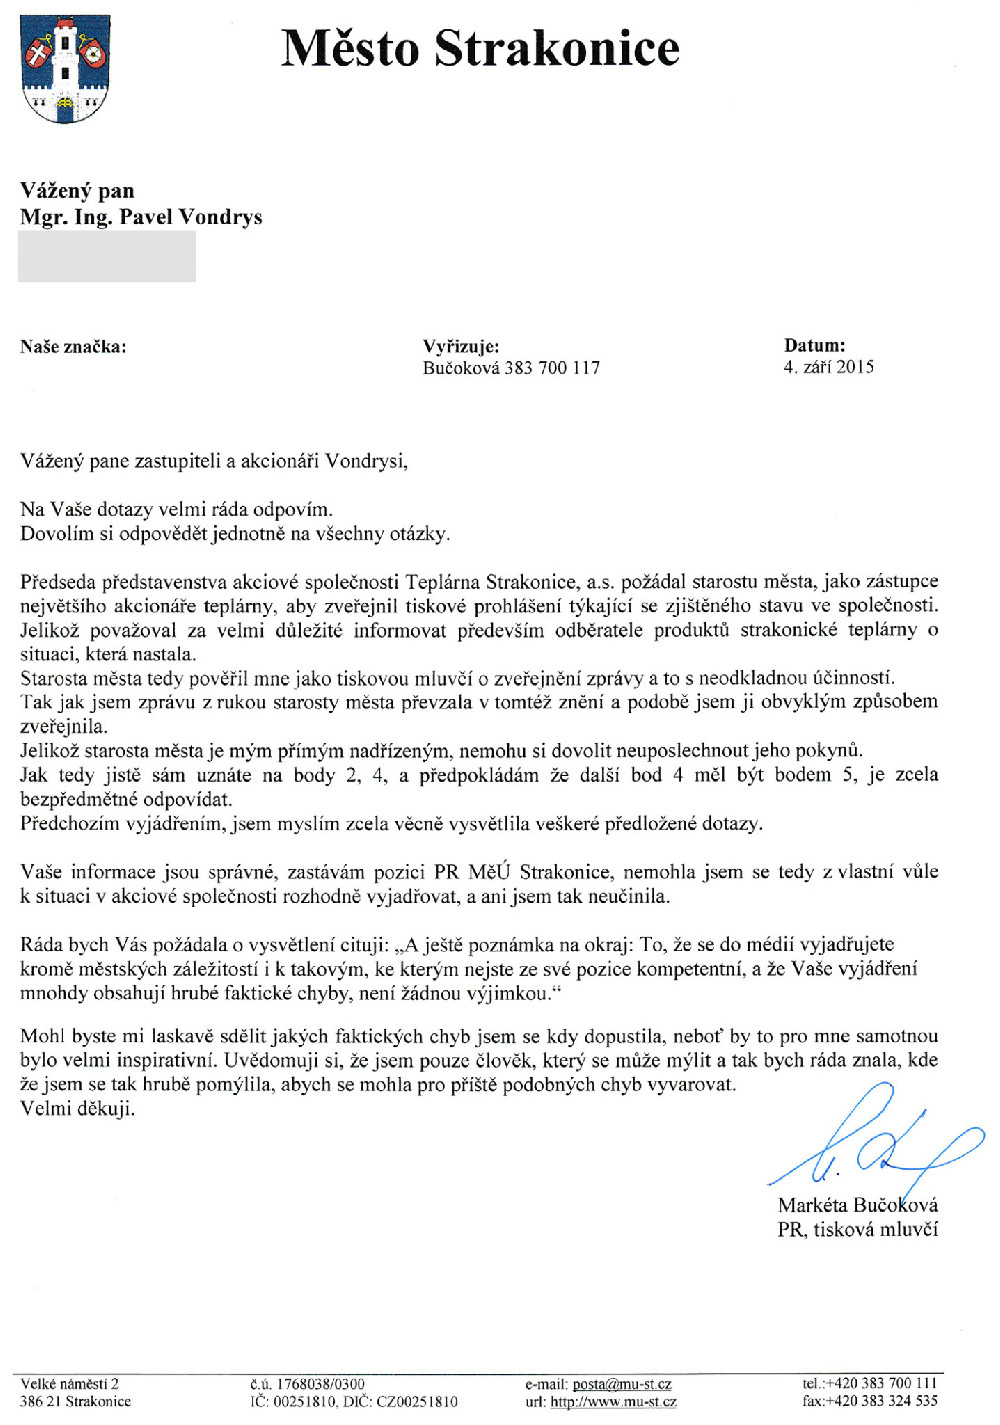 Dopis od města Strakonice, tiskové mluvčí Markéty Bučokové ze 4.9.2015 Pavlu Vondrysovi